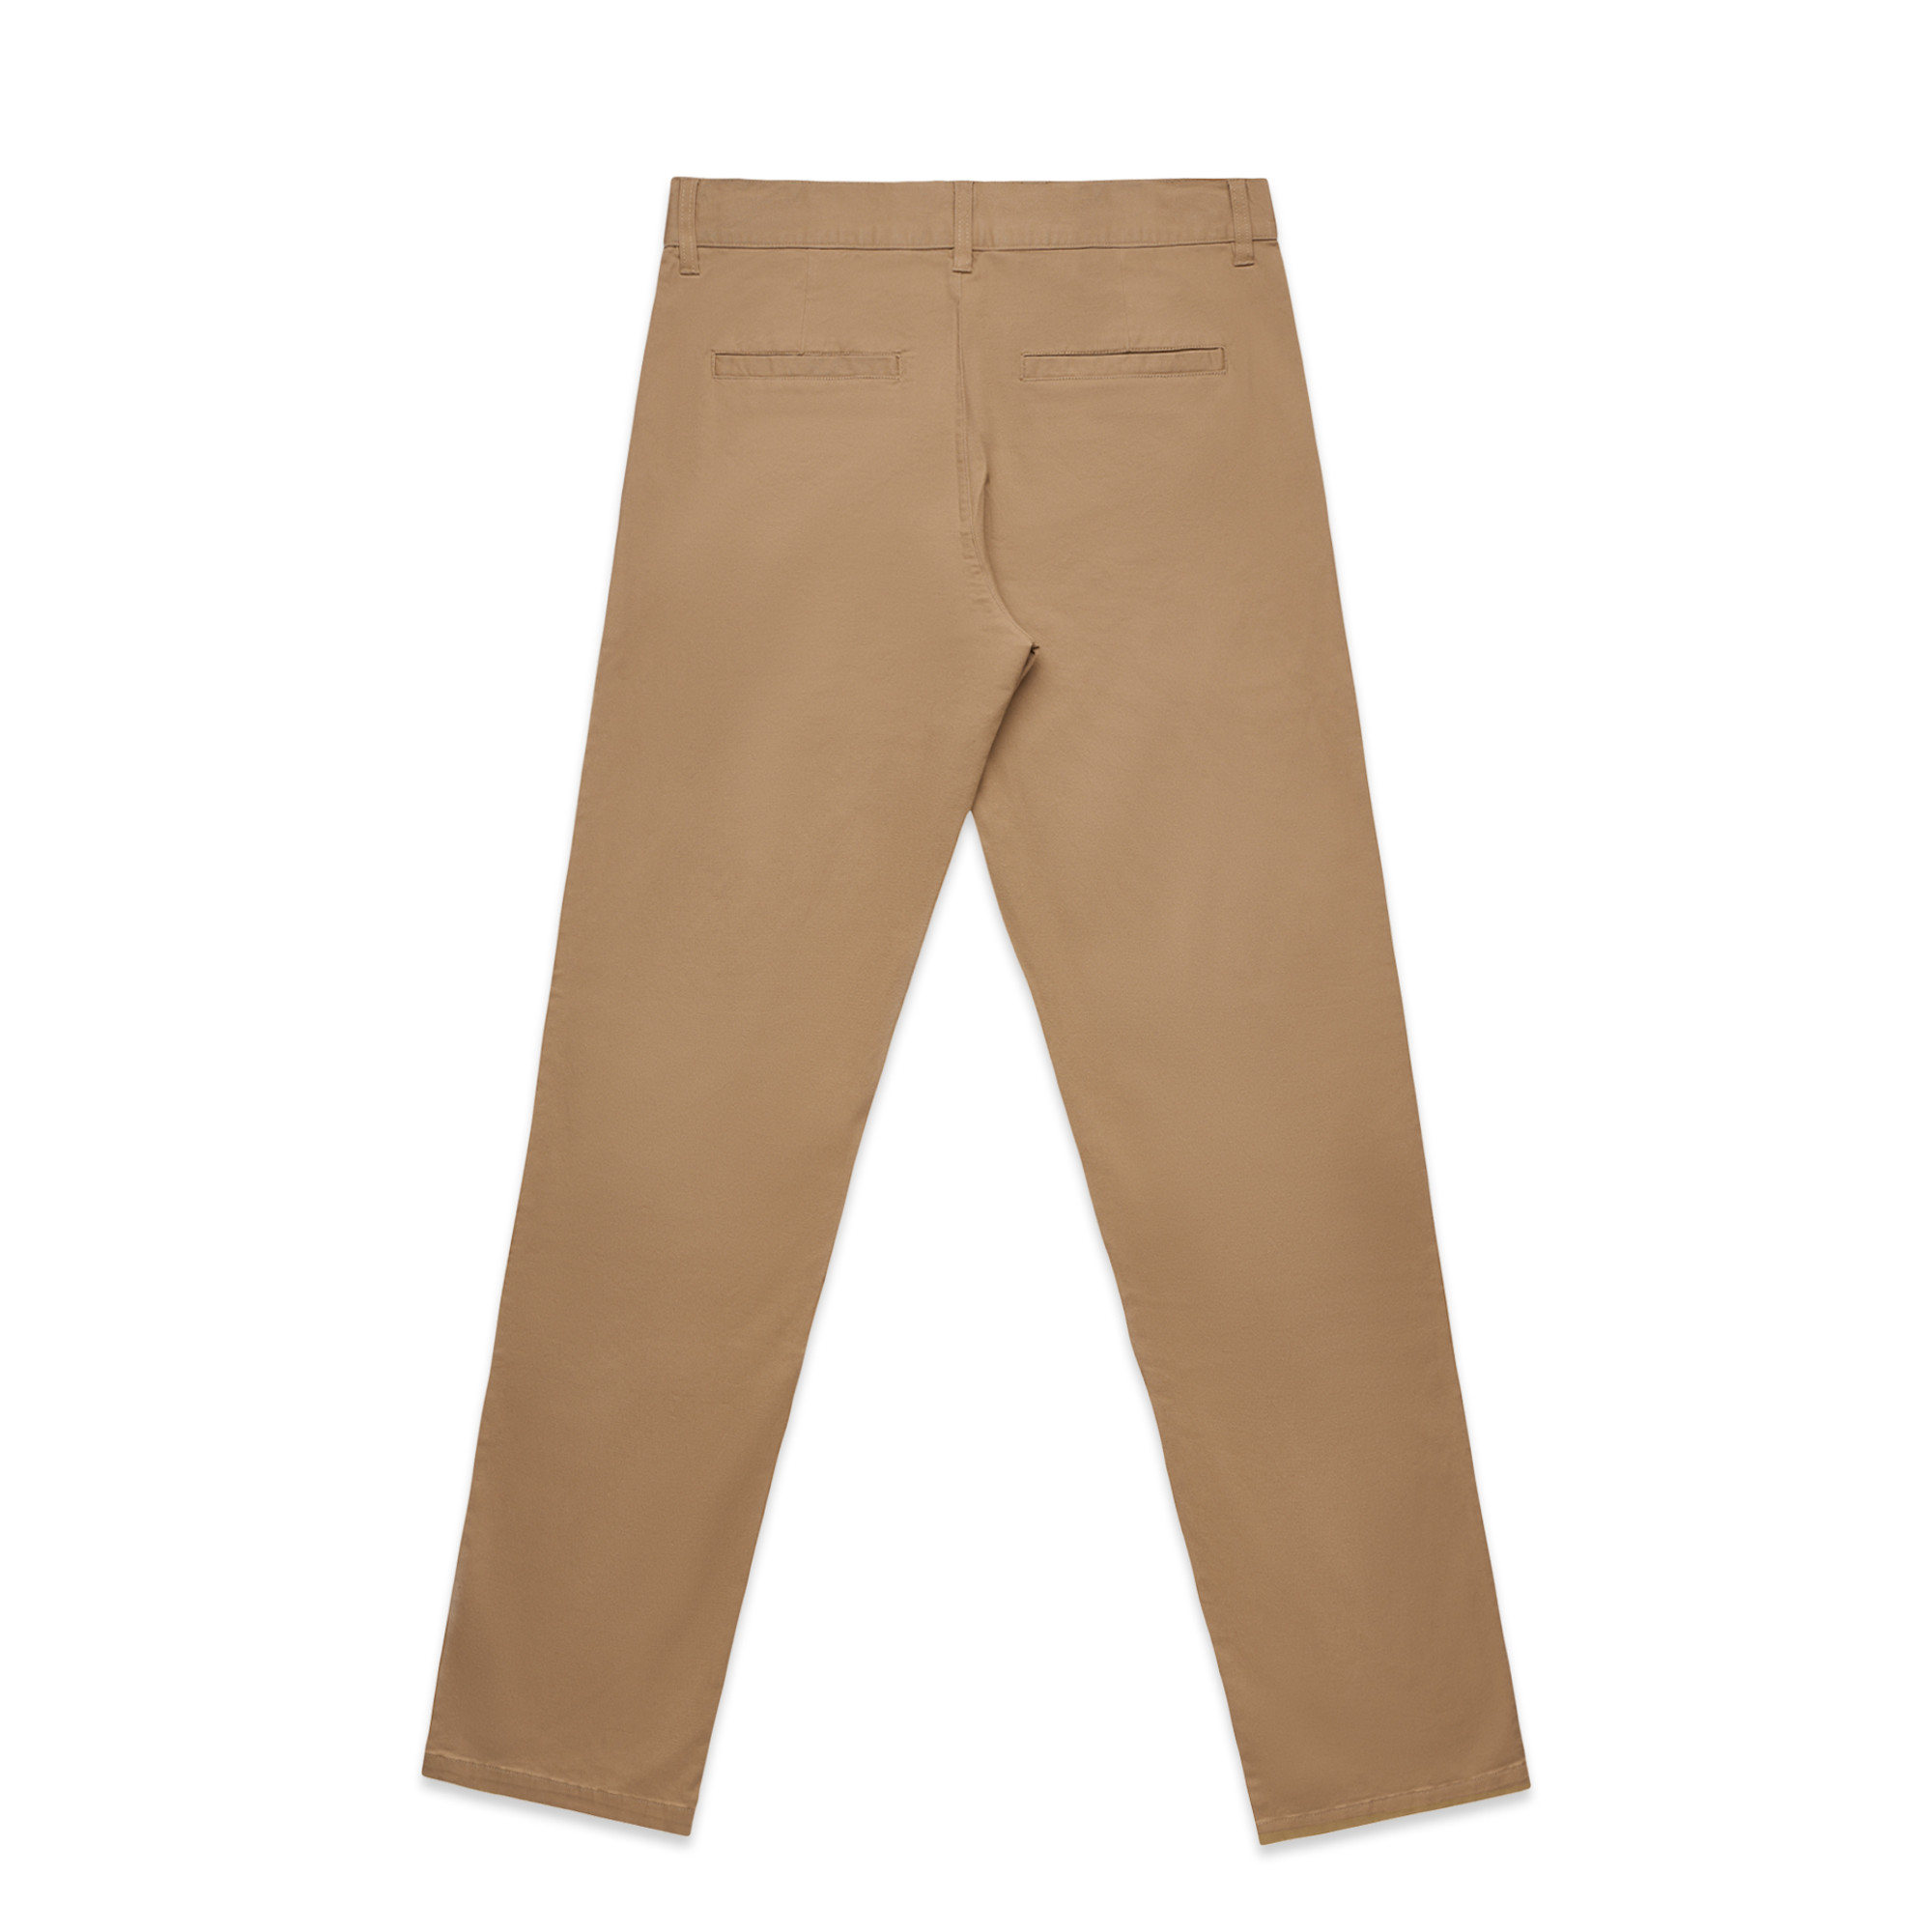 Mens Straight Pants - 5930 - AS Colour AU